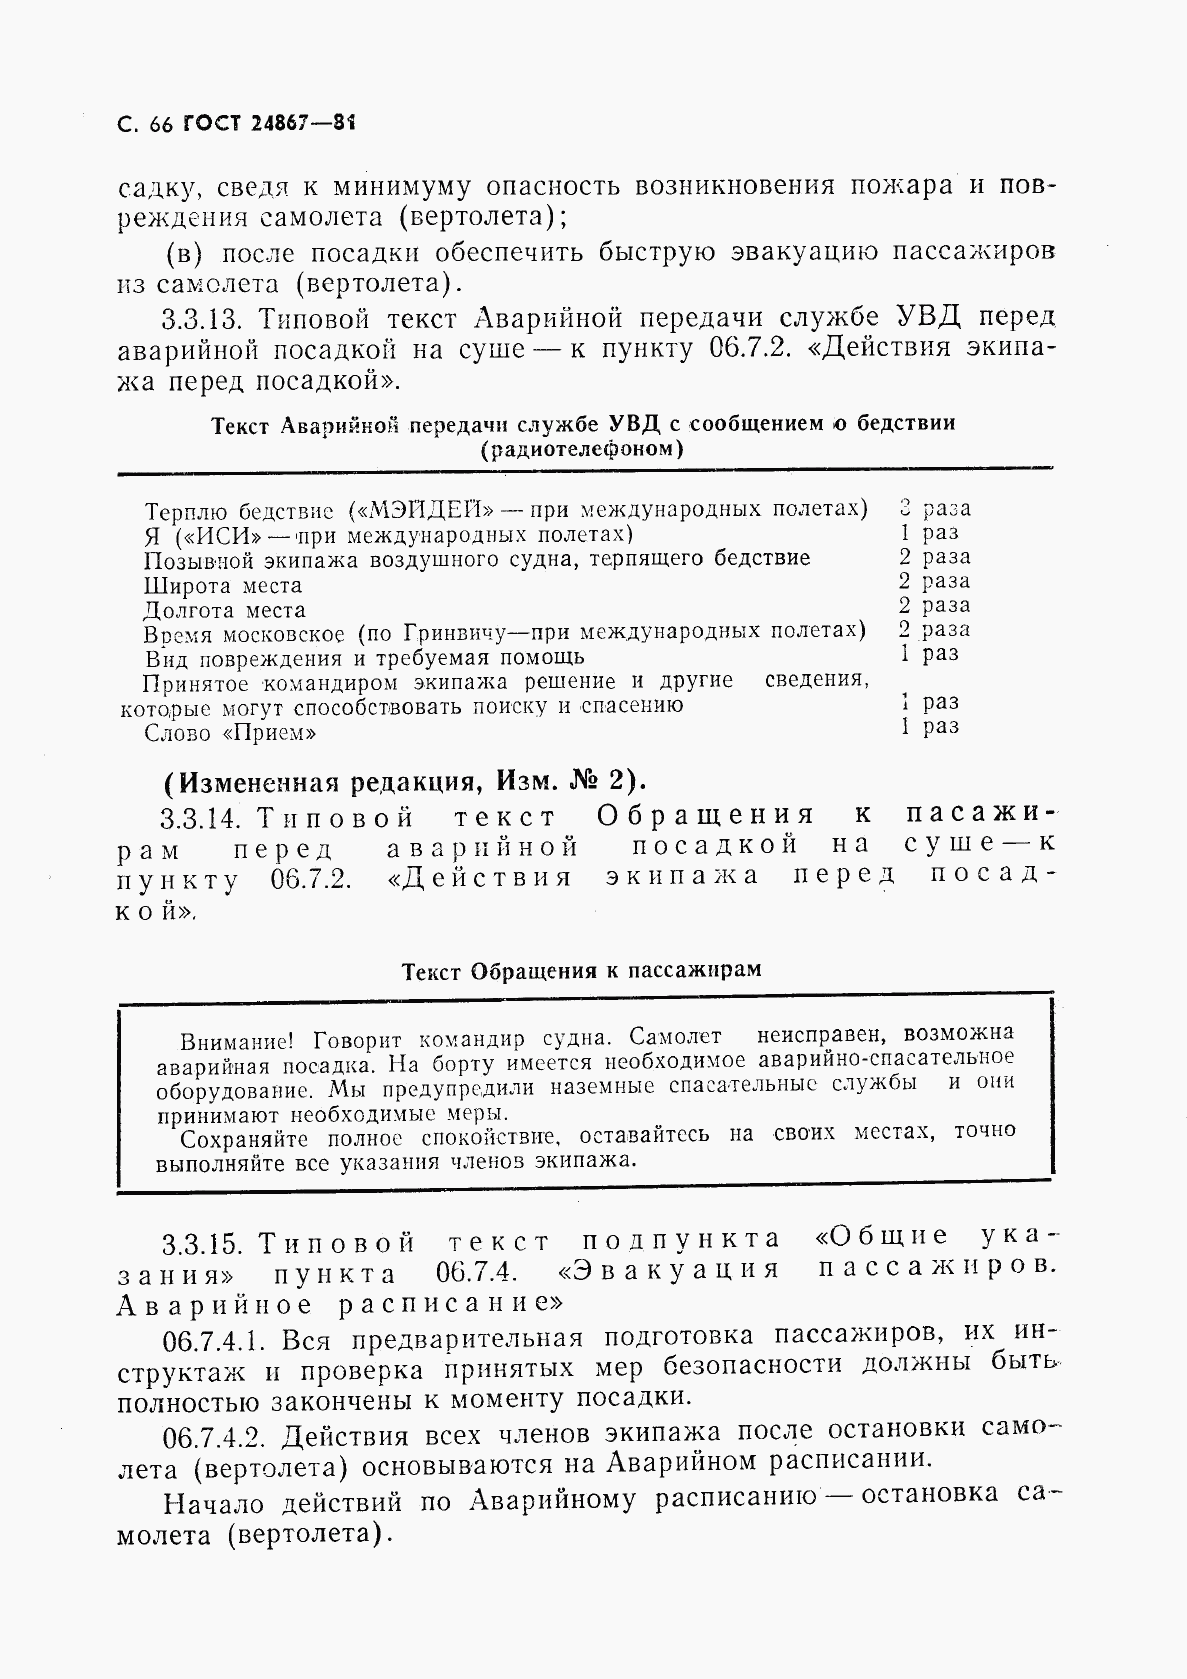 ГОСТ 24867-81, страница 69